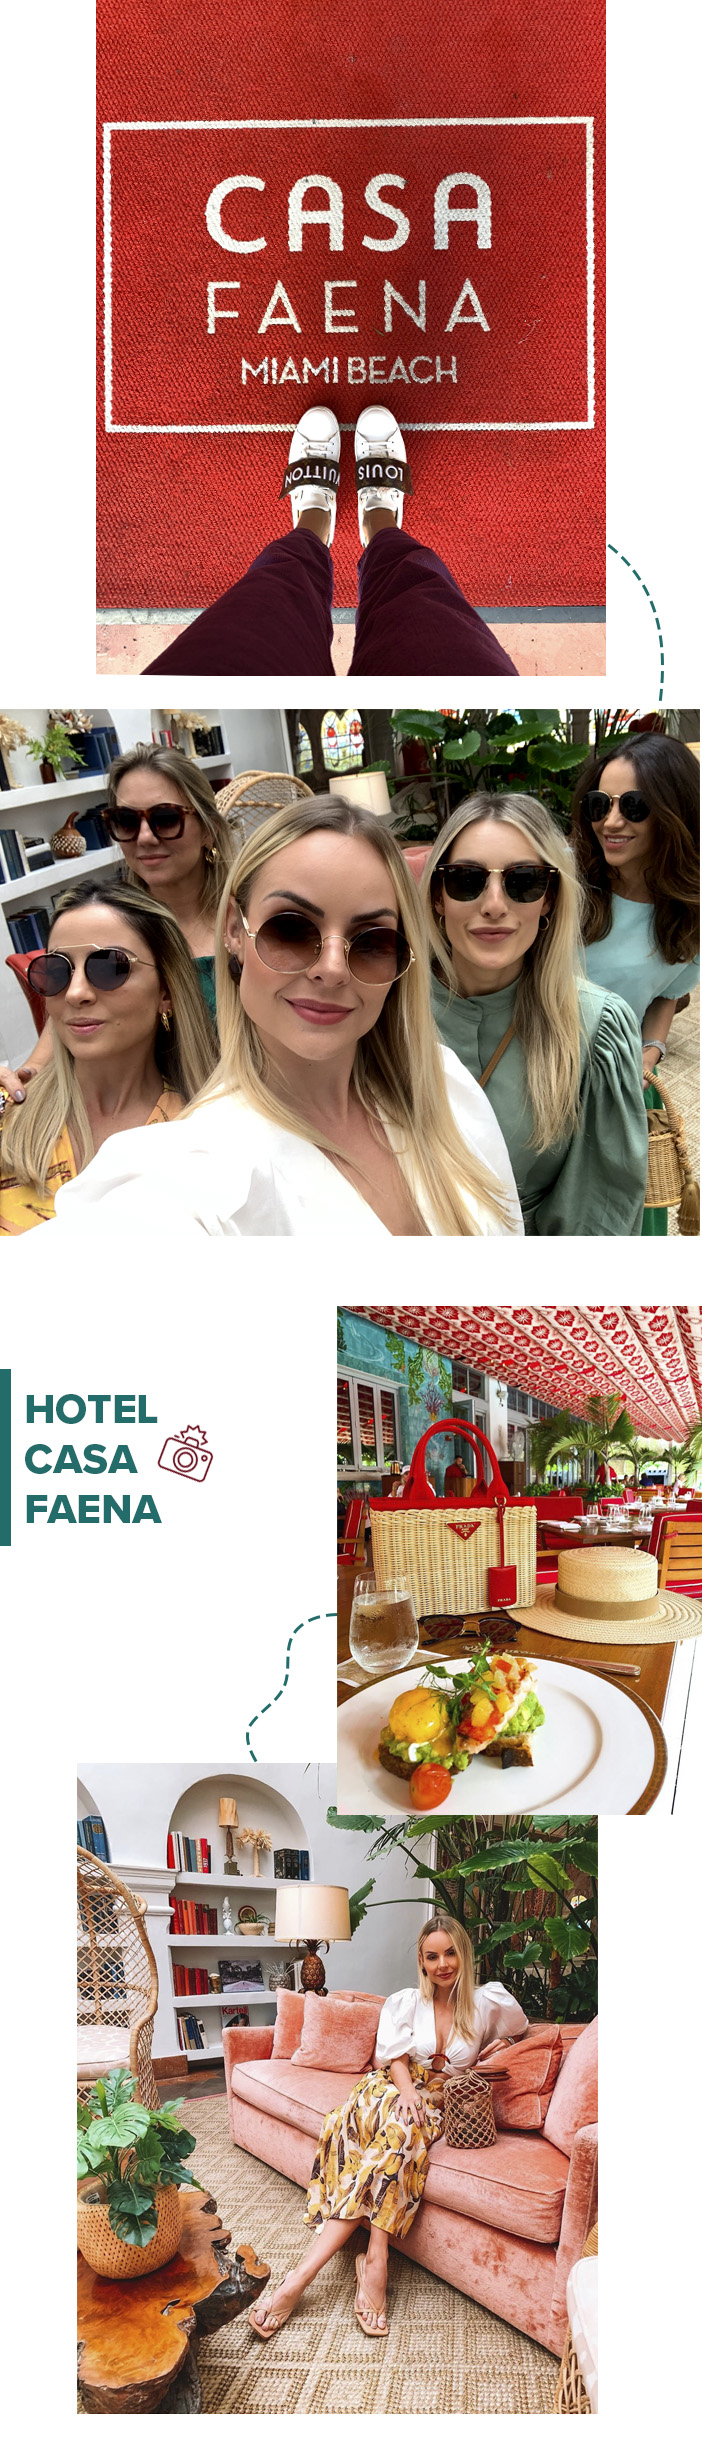 Diário de Bordo - Layla no Brazil Fashion Forum Miami - Hotel Casa Faena